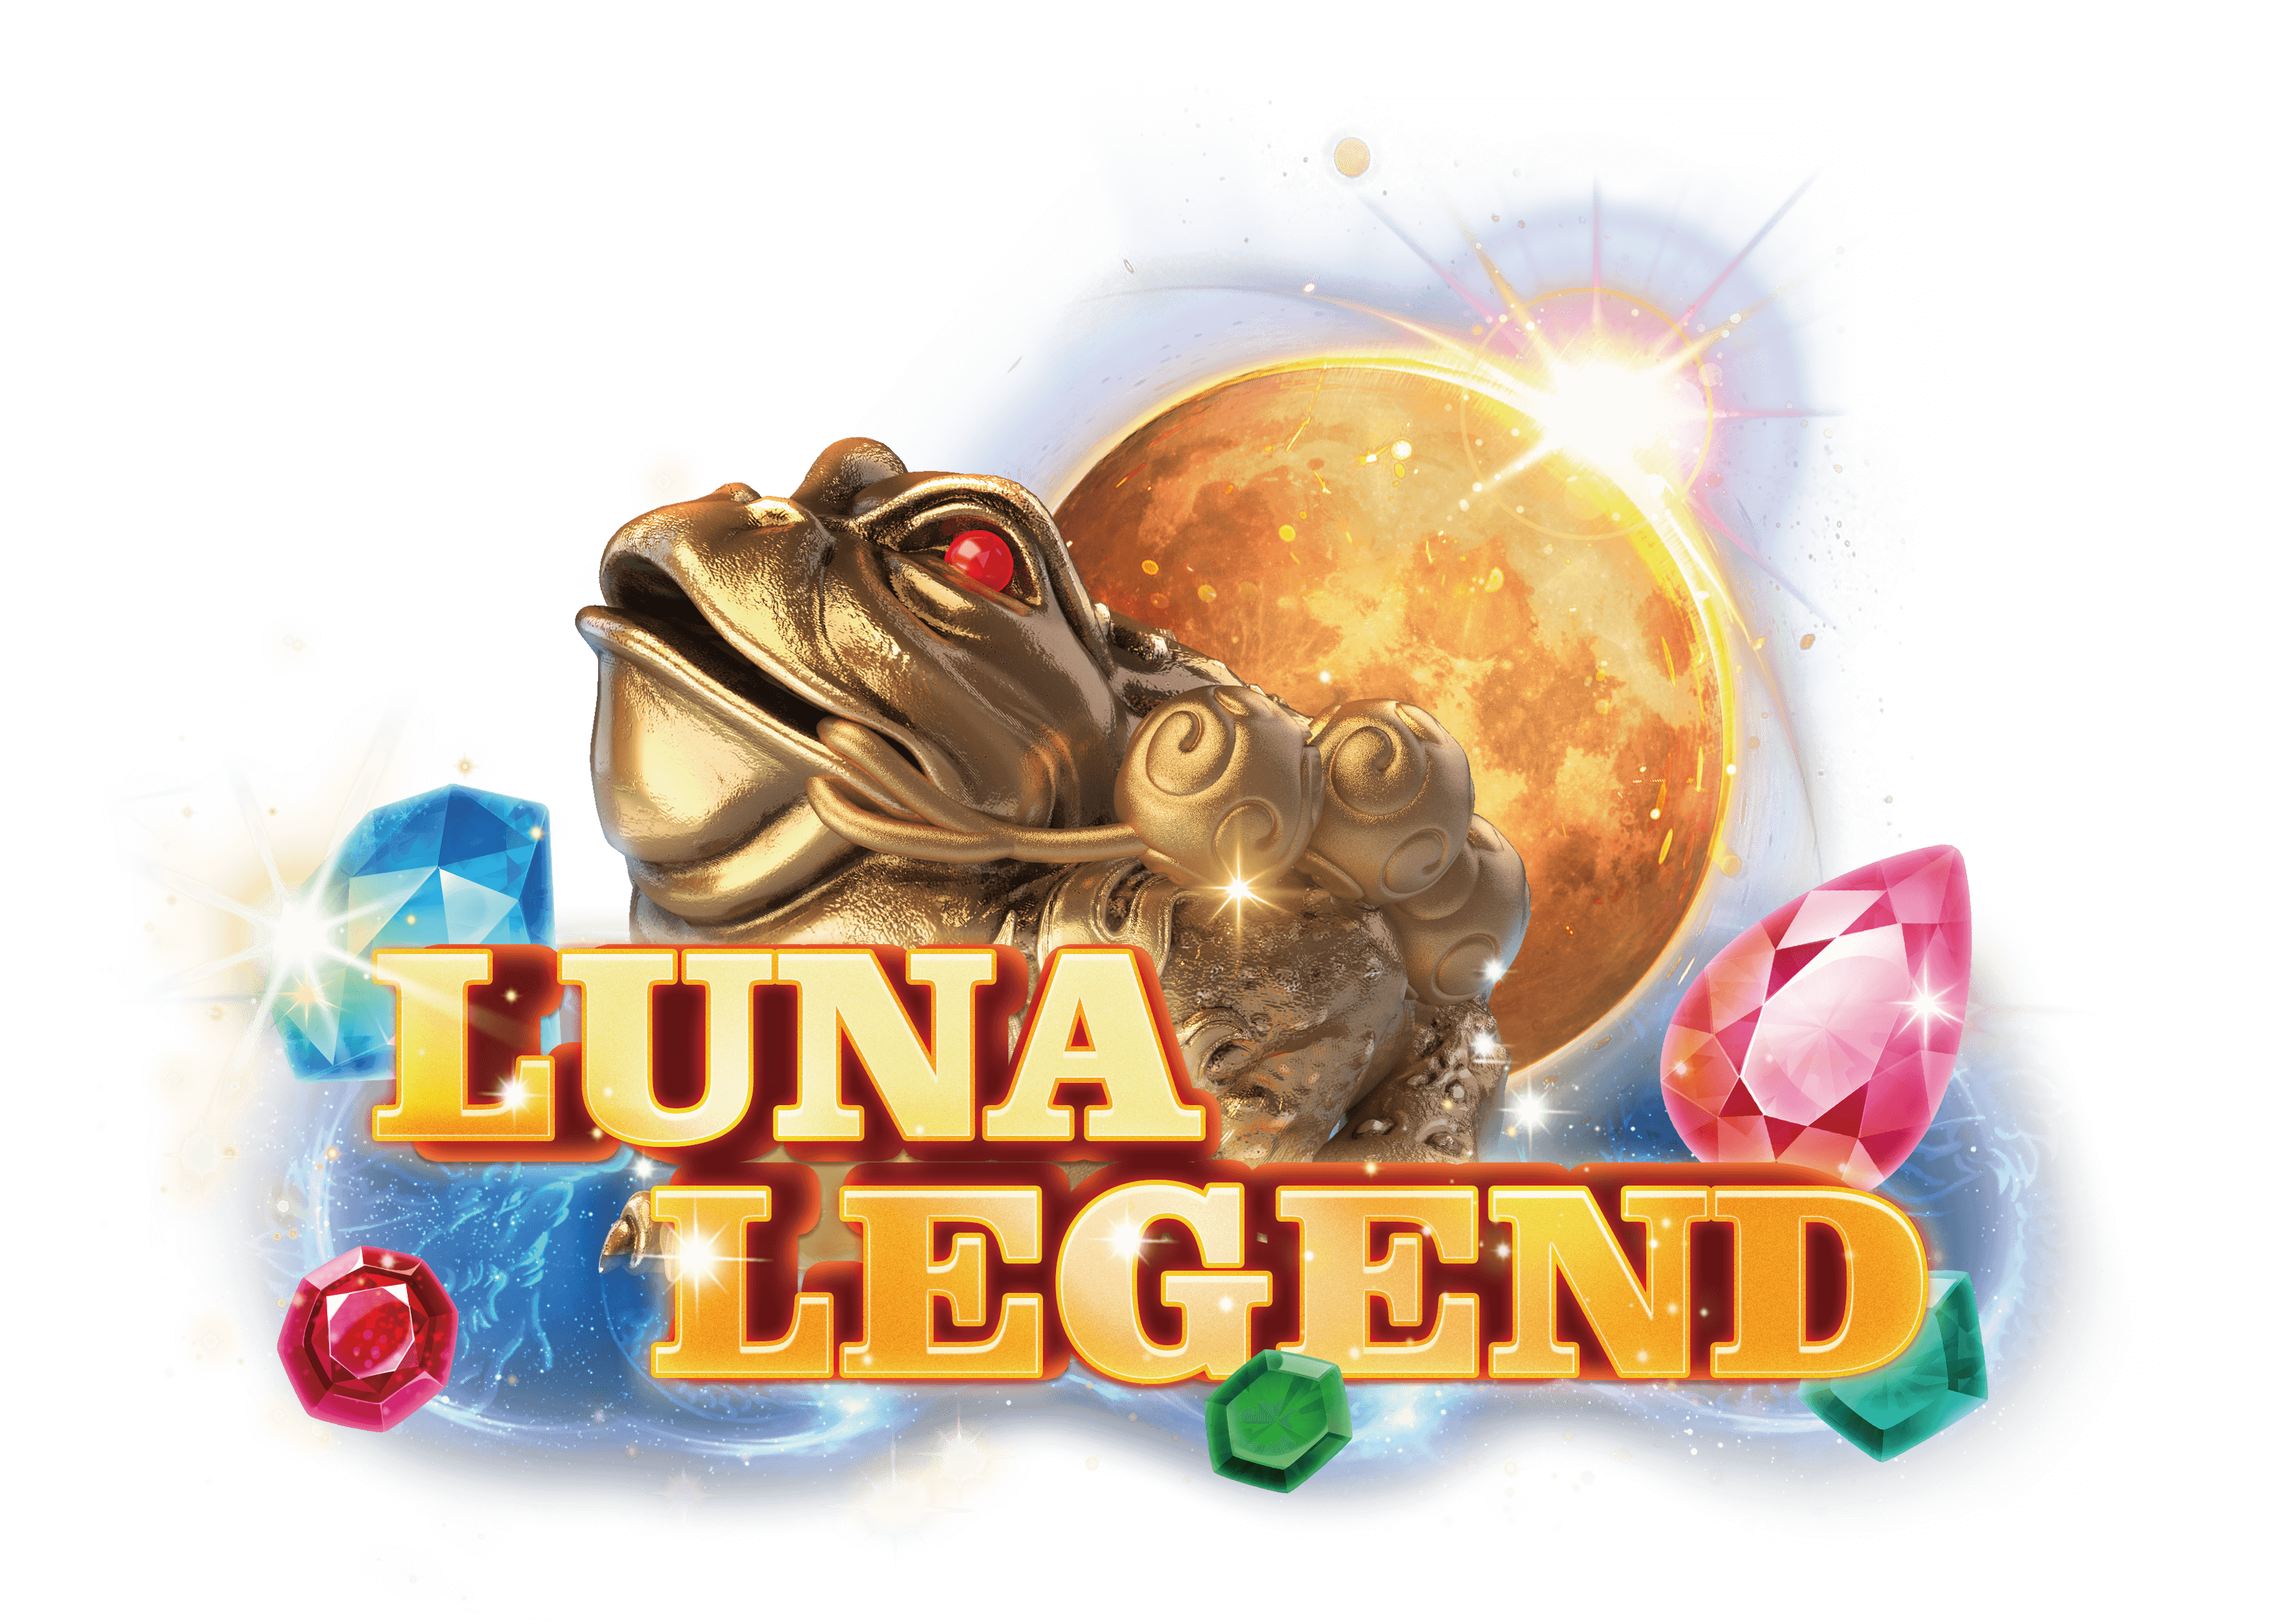 20220601 EN Luna Legend